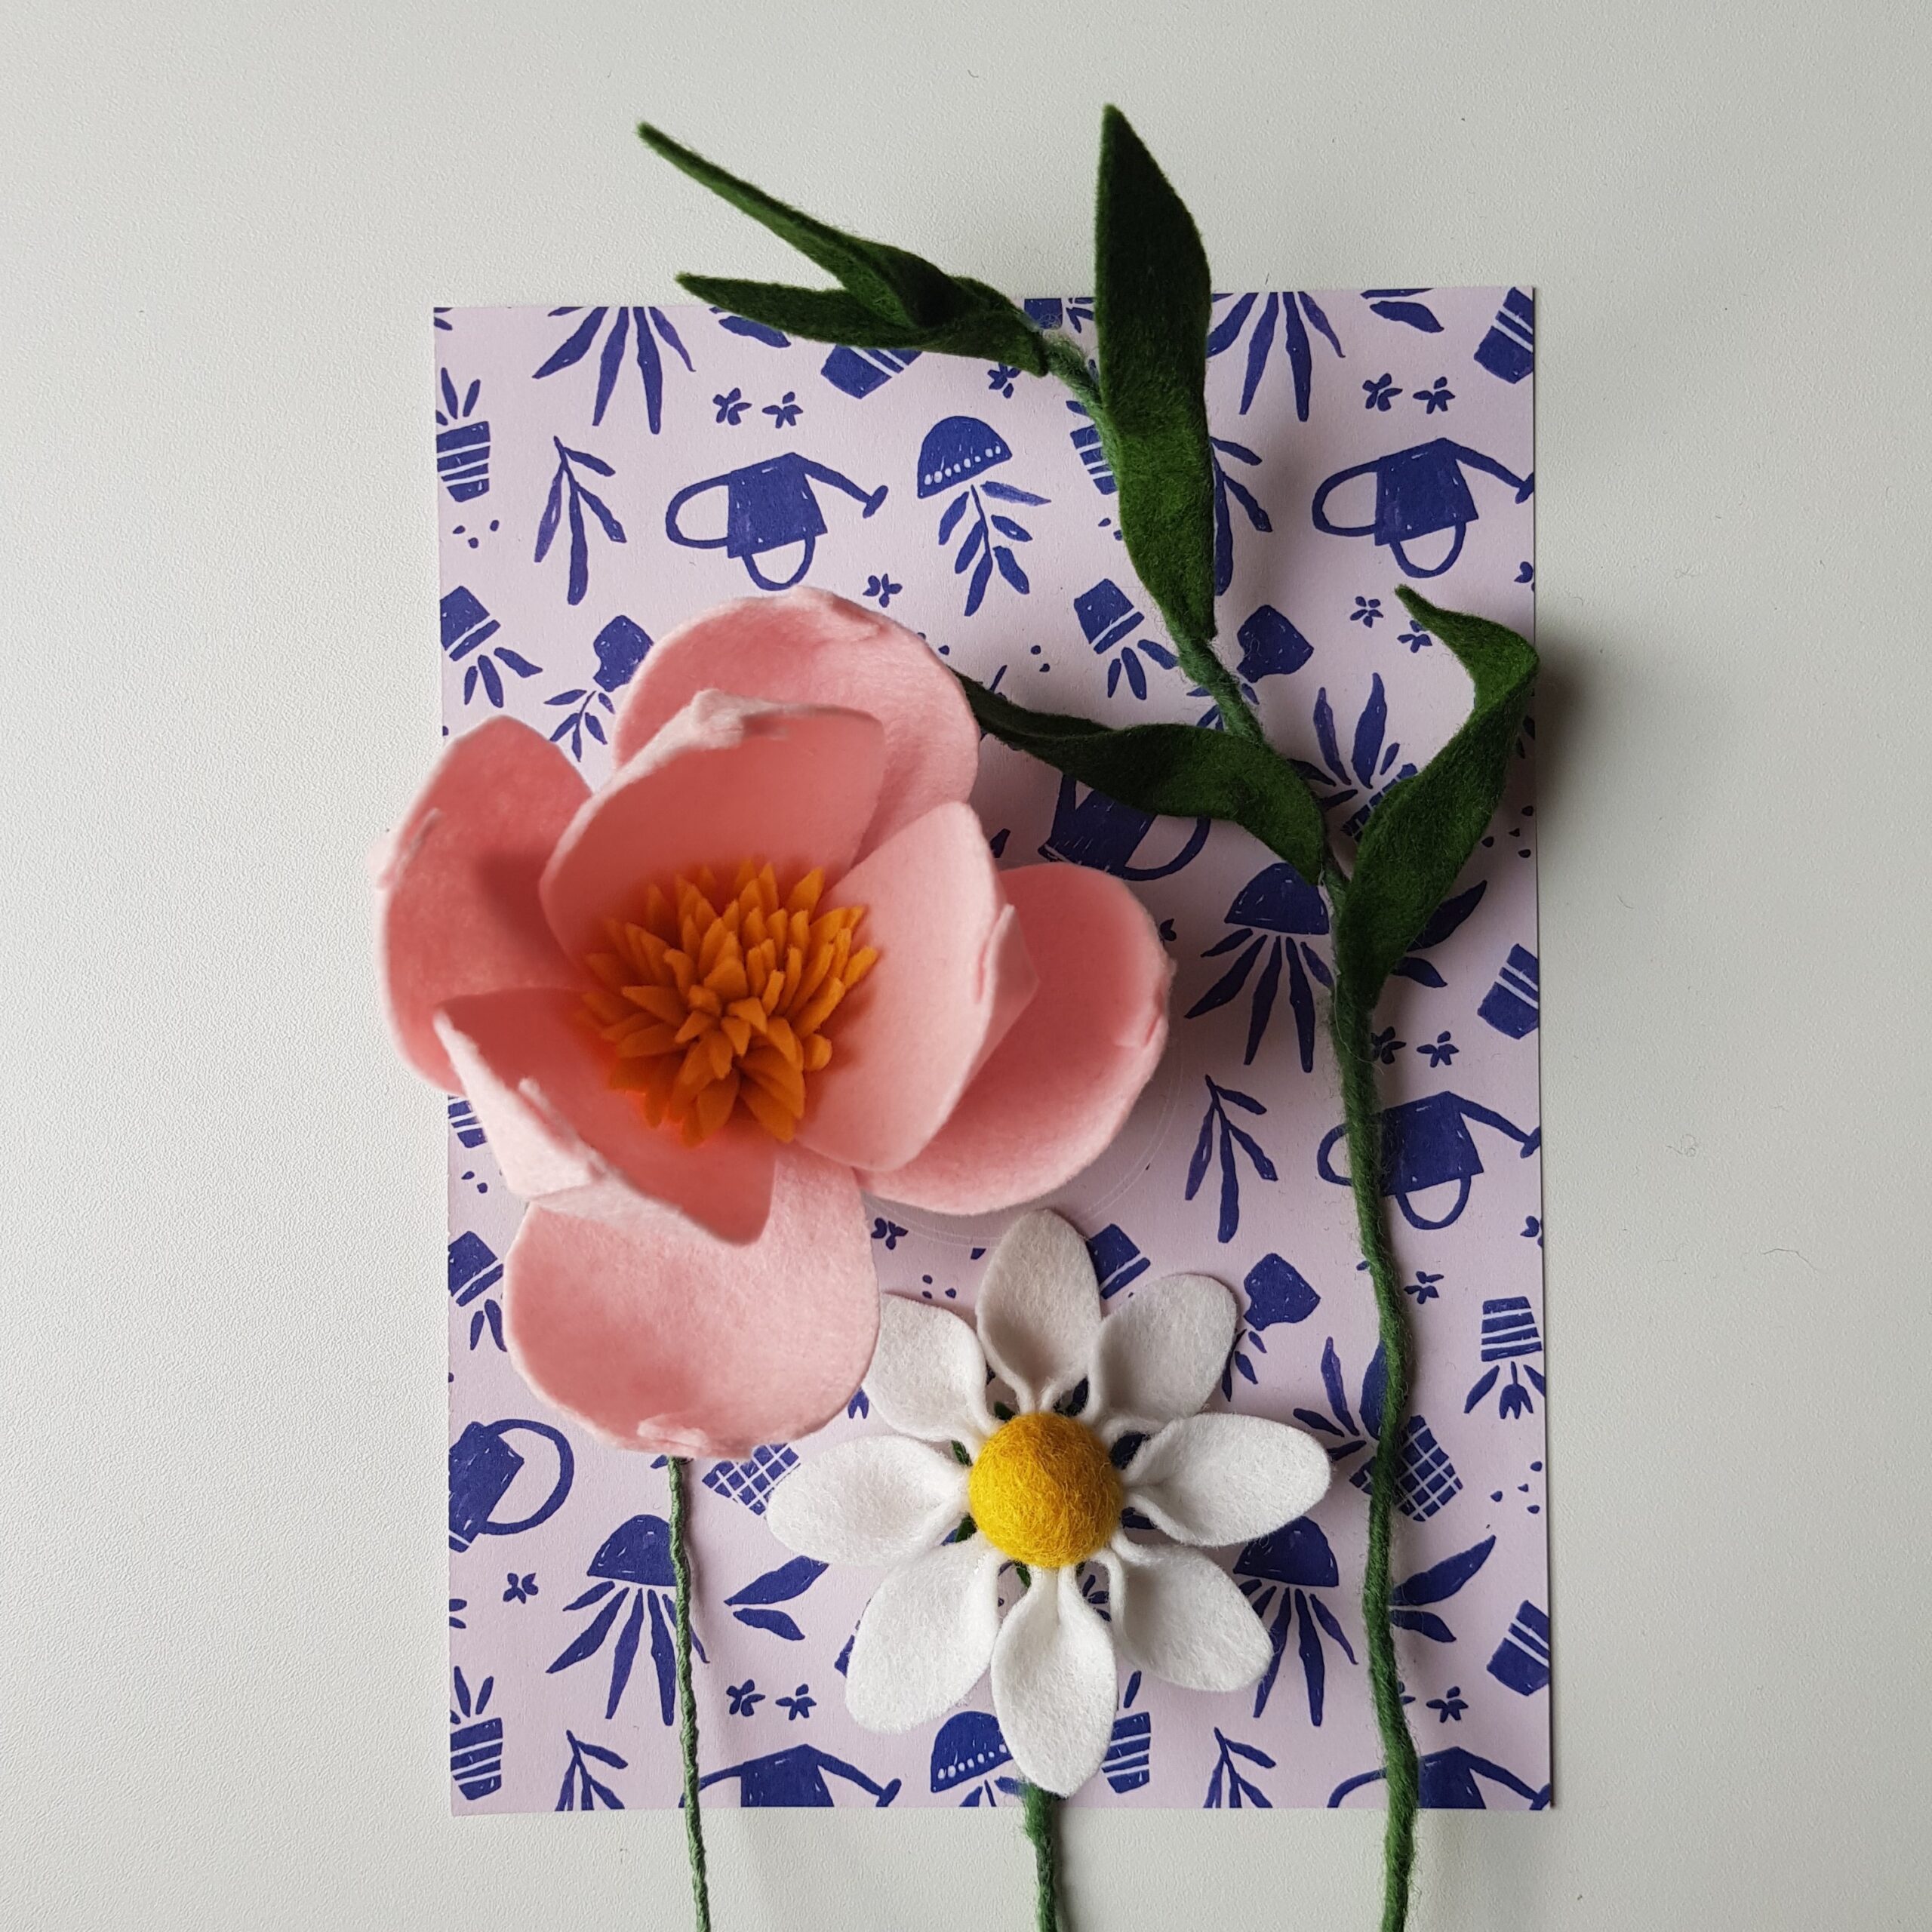 DIY // Vilten bloemen maken met de Viltbloemist Academy + een verrassing!